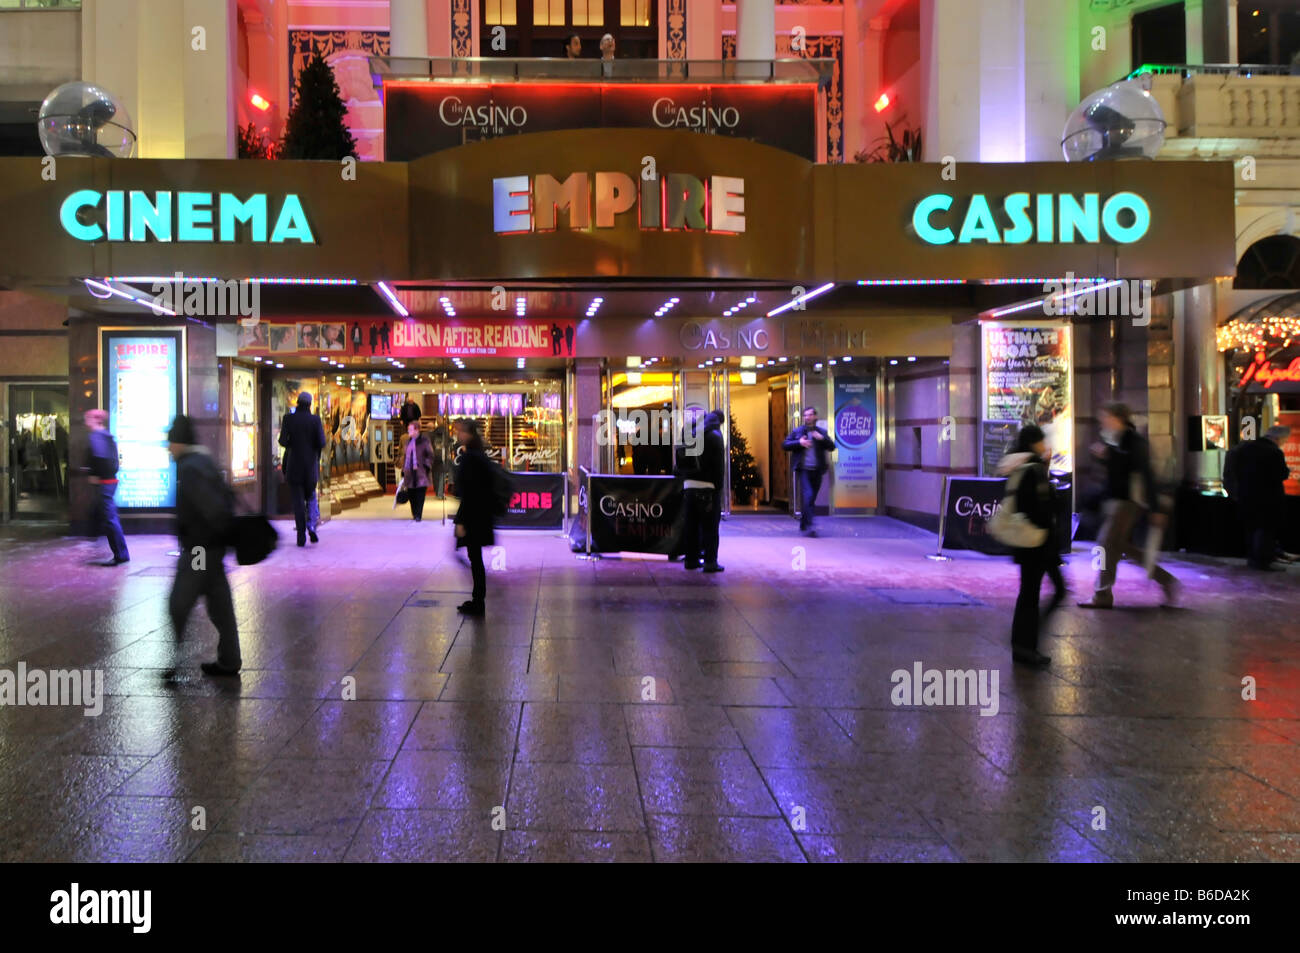 Abends Blick auf die Menschen auf dem Bürgersteig vor dem Empire Leicester Square Kino Casino Unterhaltungsgelände, in leuchtenden Farben, Flutlicht London England Großbritannien Stockfoto